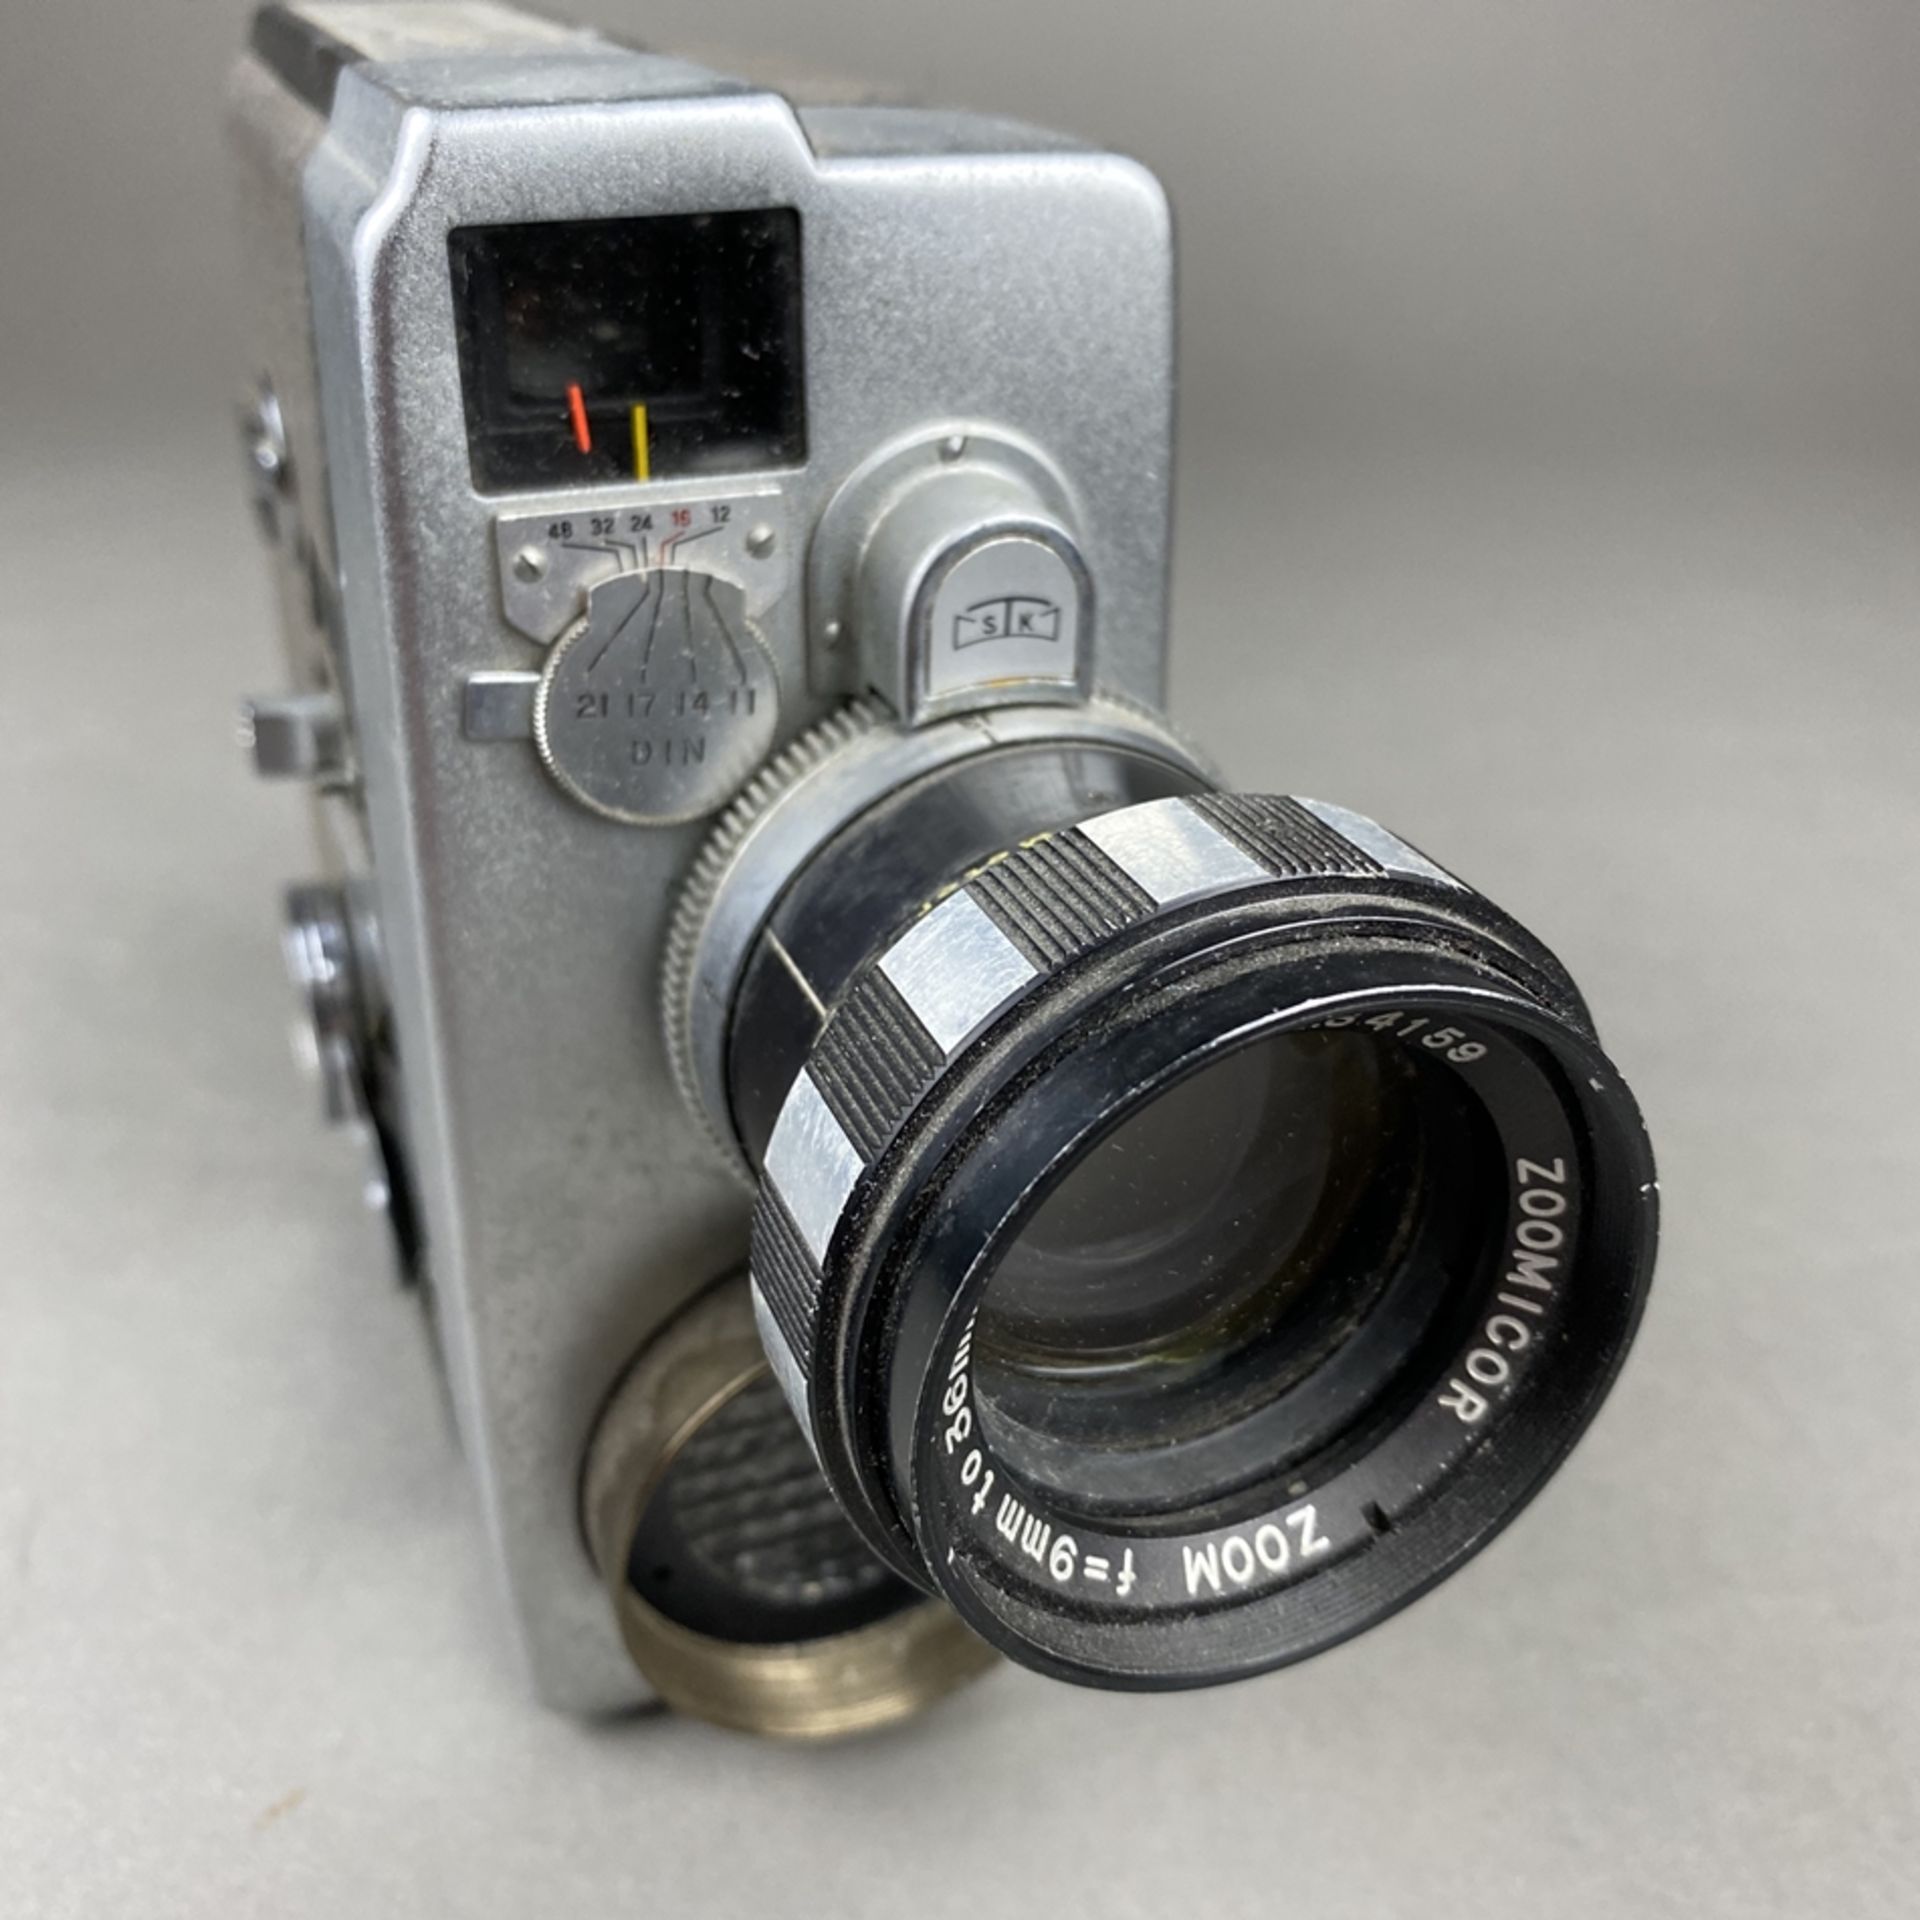 Vintage Filmkamera Zoomicon 8 - STK, Japan, Metallgehäuse, 1959/60, Objektiv Zoomicor / Zoom, f=9- - Bild 3 aus 8